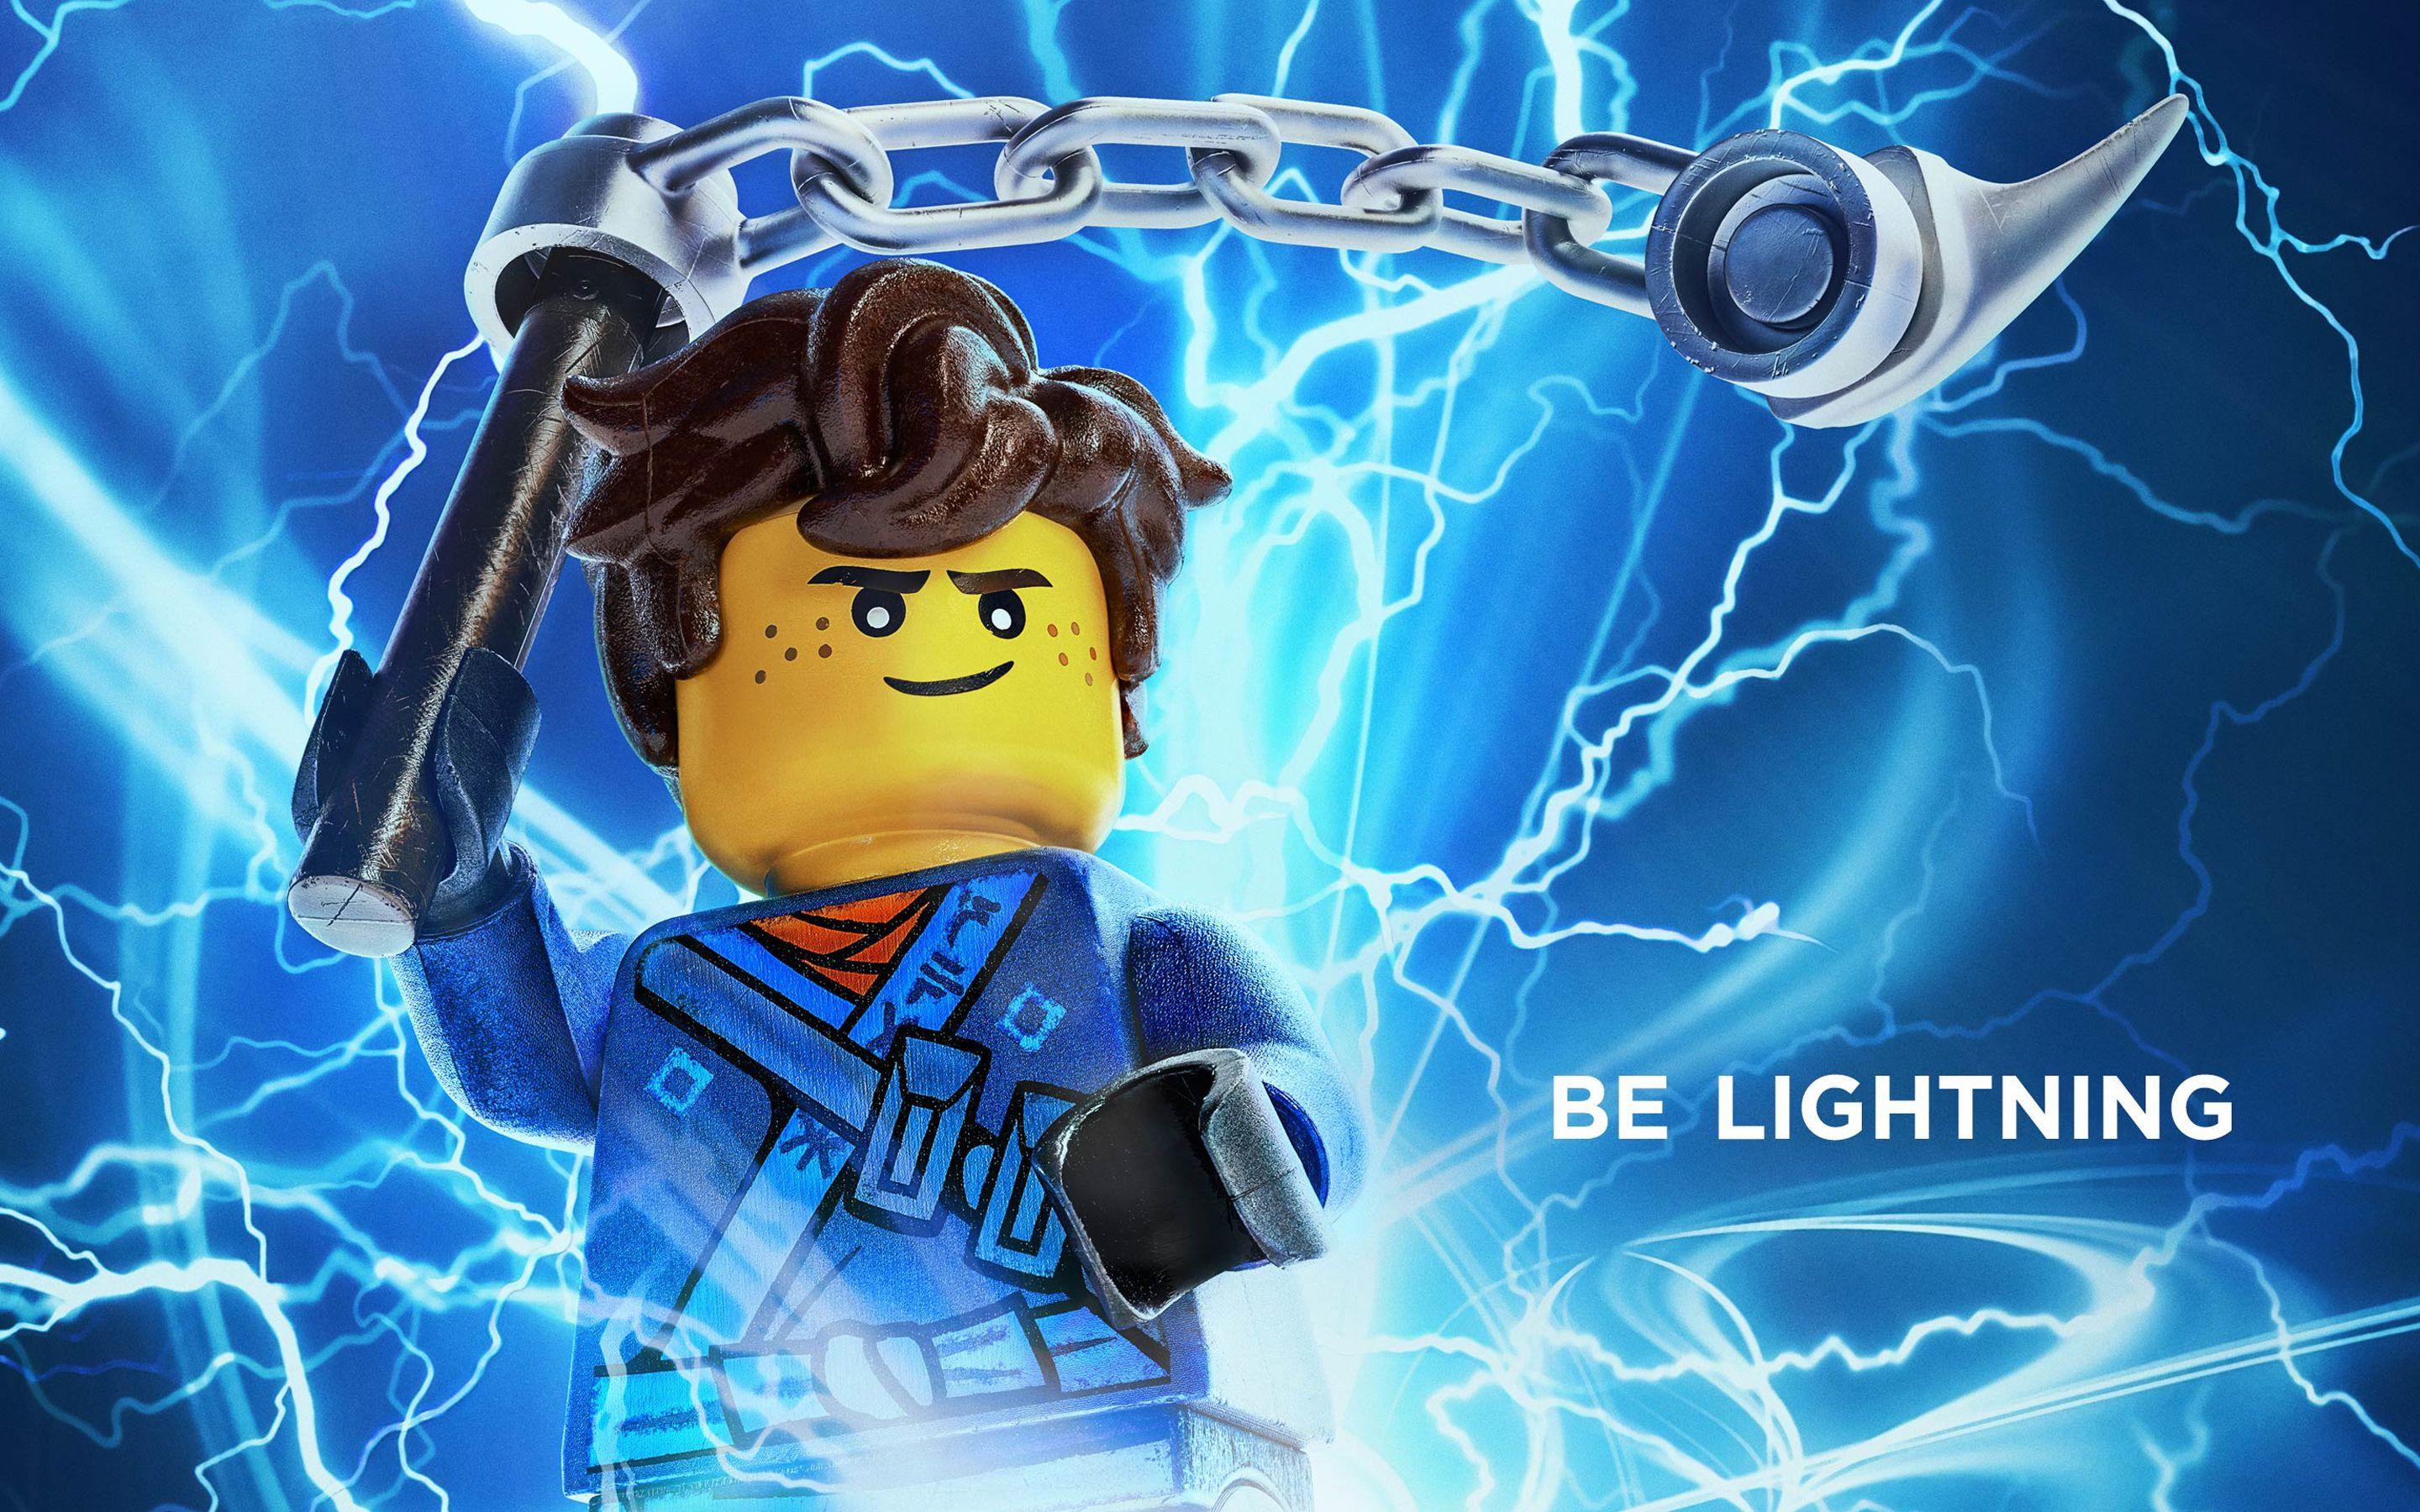 Jay Be Lightning The Lego Ninjago Movie 2017 Wallpaper. HD